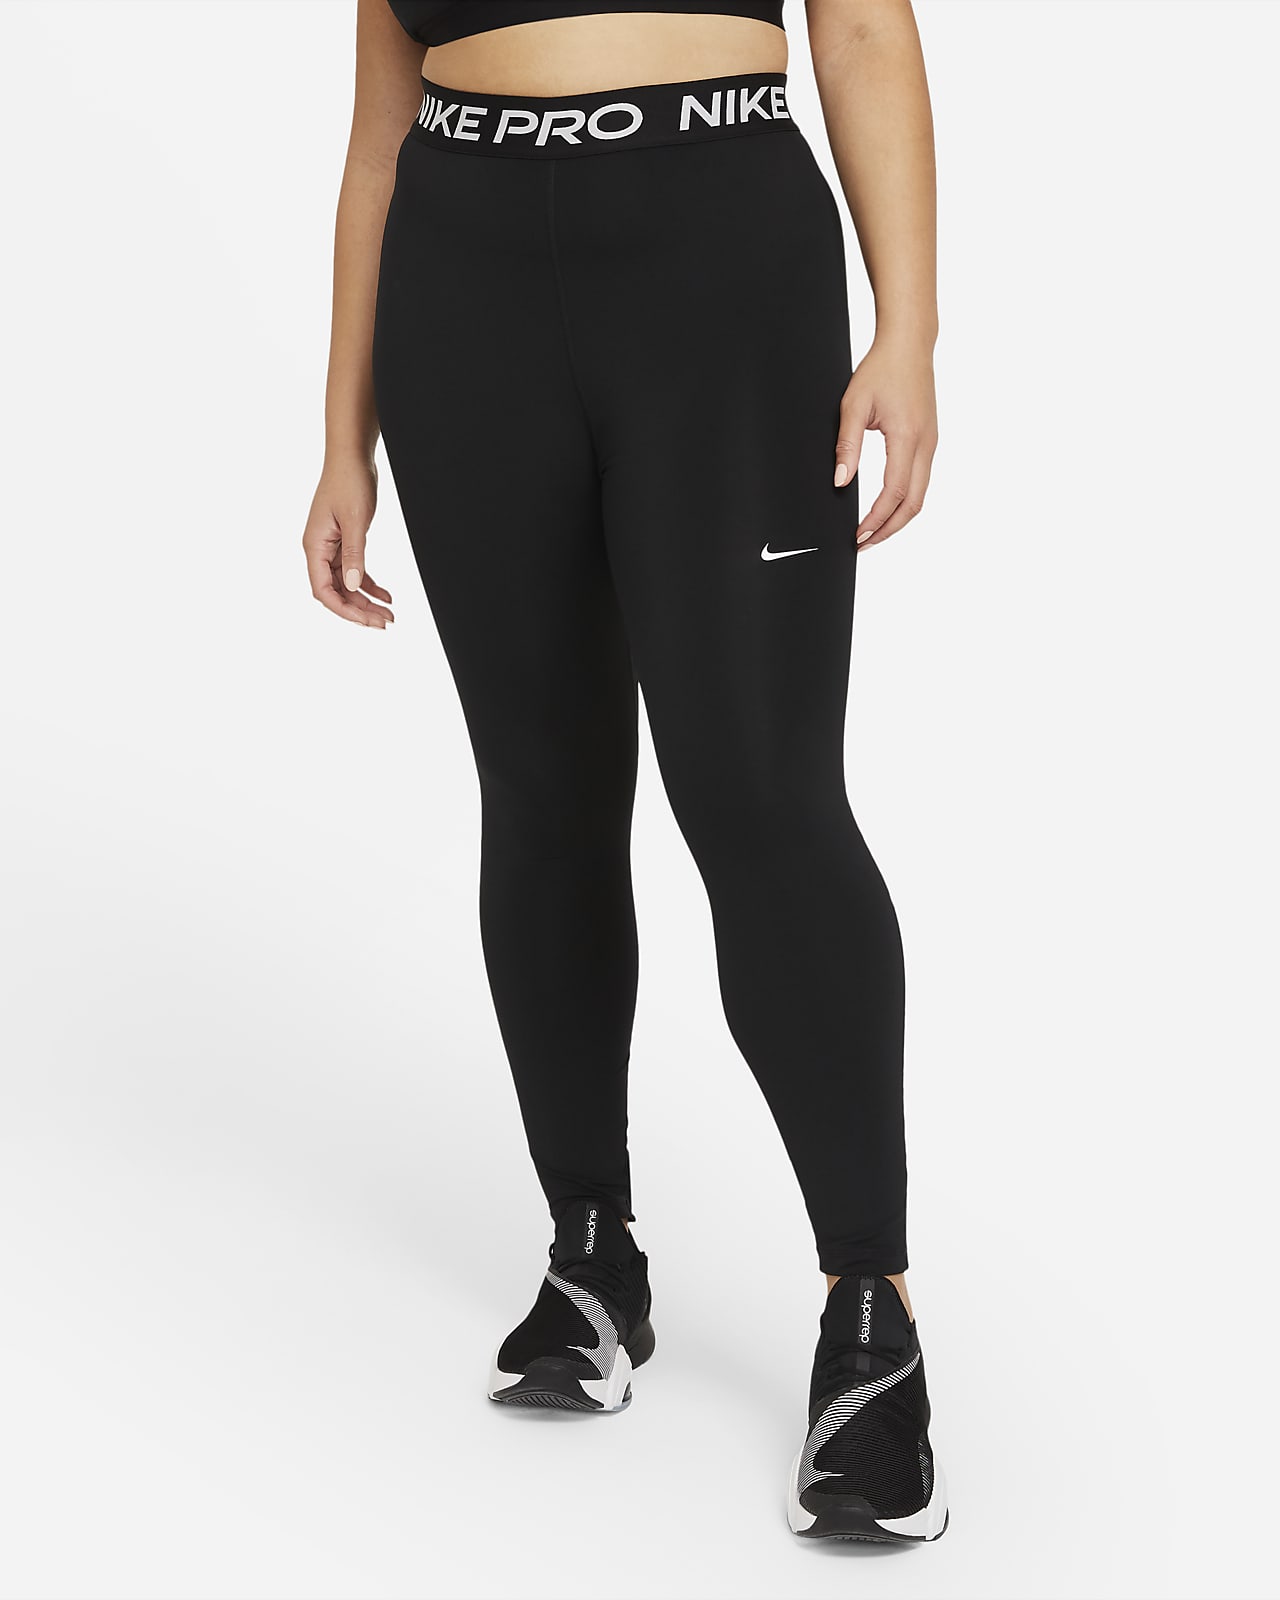 Γυναικείο κολάν Nike Pro 365 (μεγάλα μεγέθη)